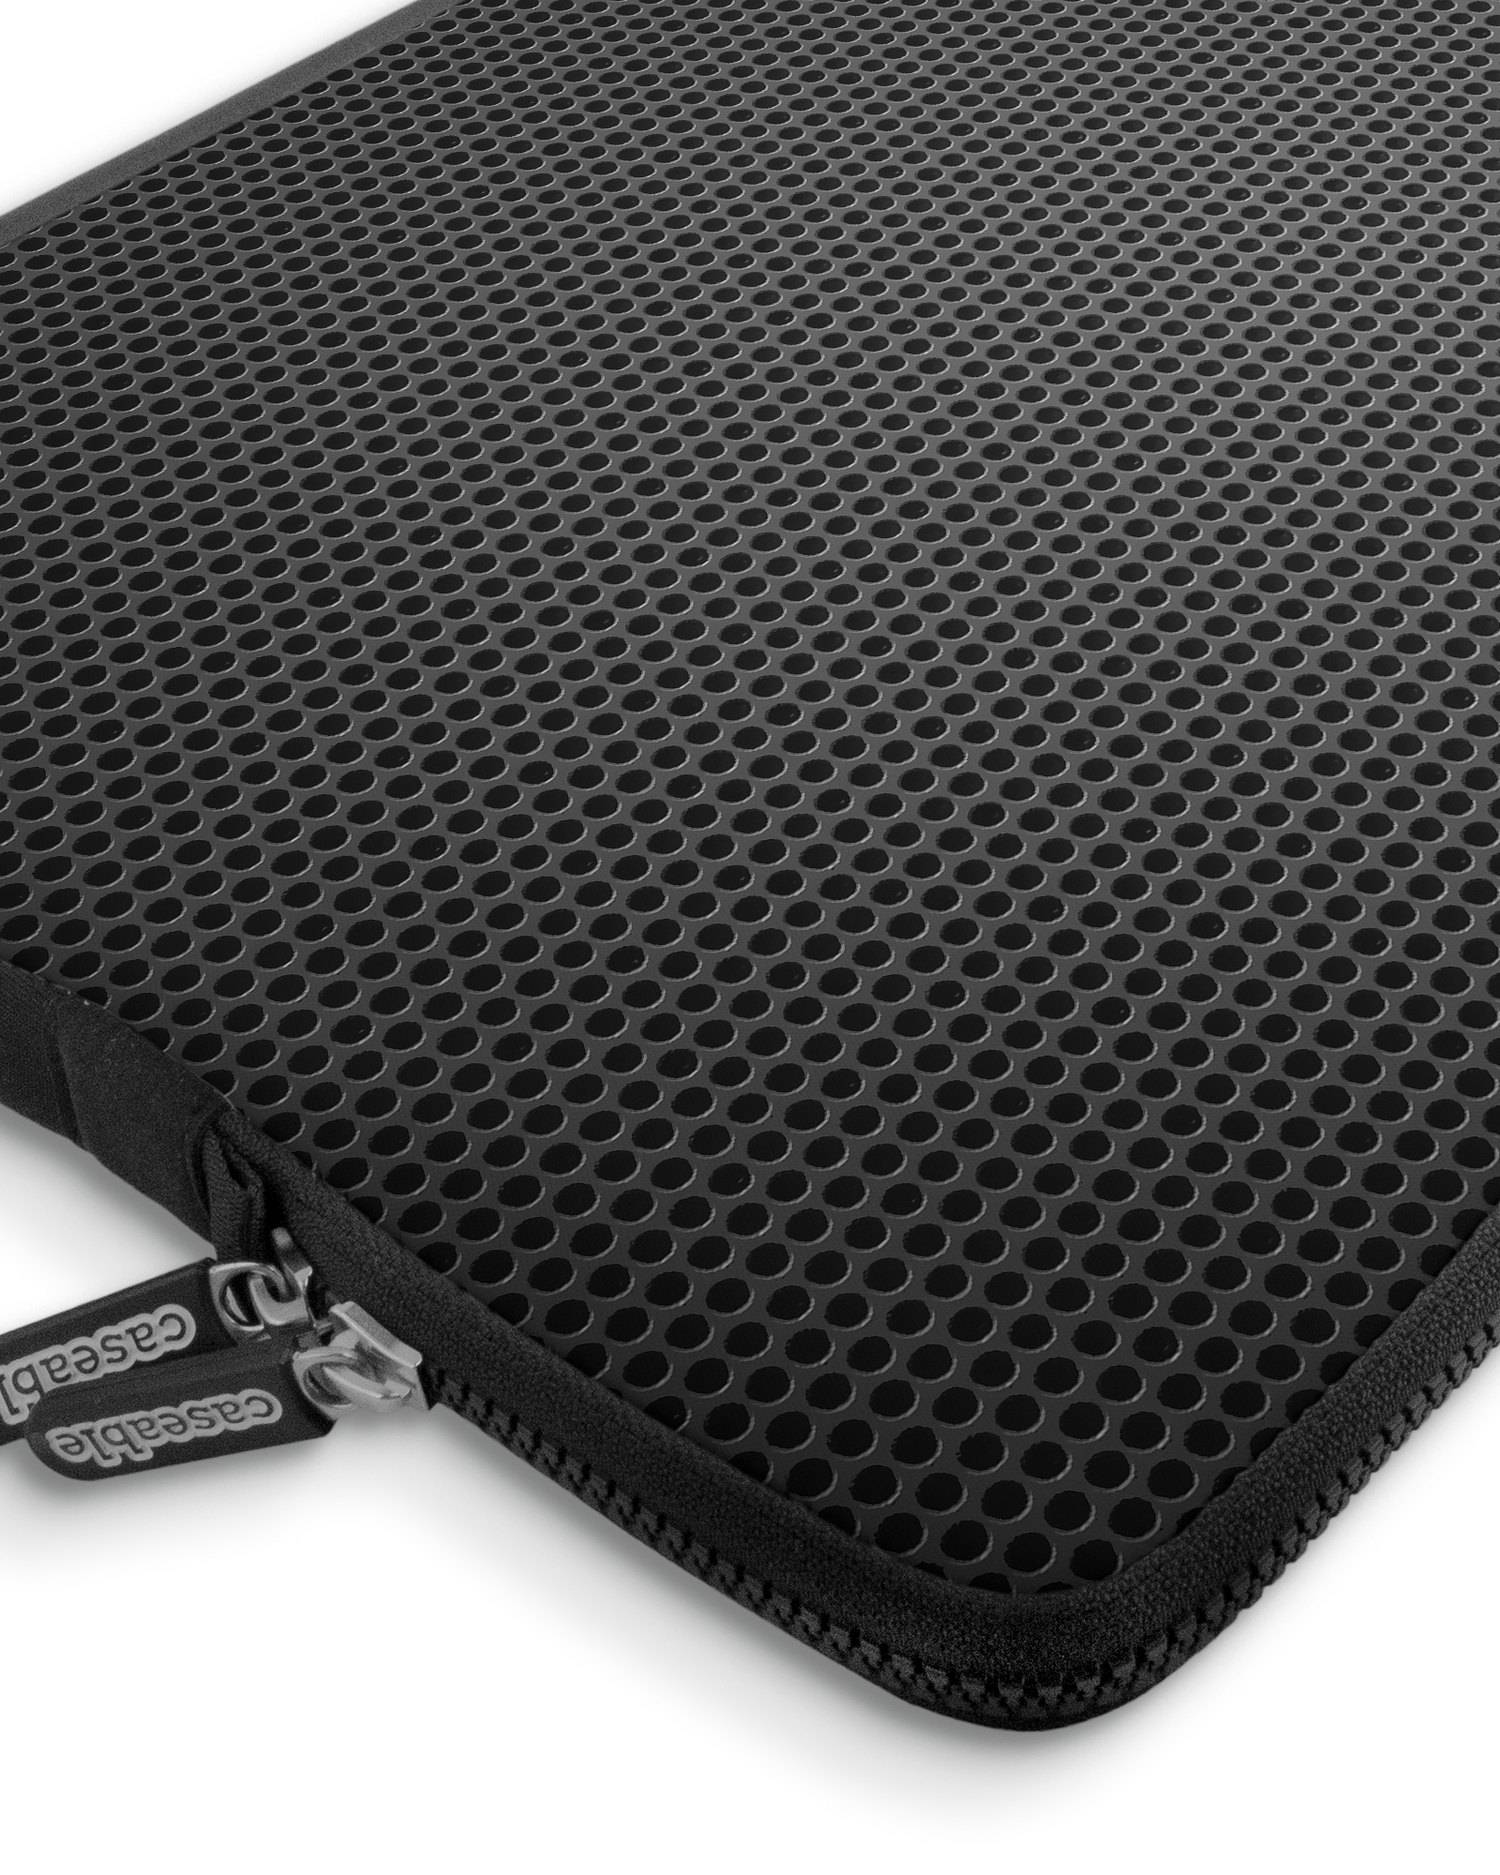 Carbon II Premium Laptoptasche 17 Zoll mit Gerät im Inneren